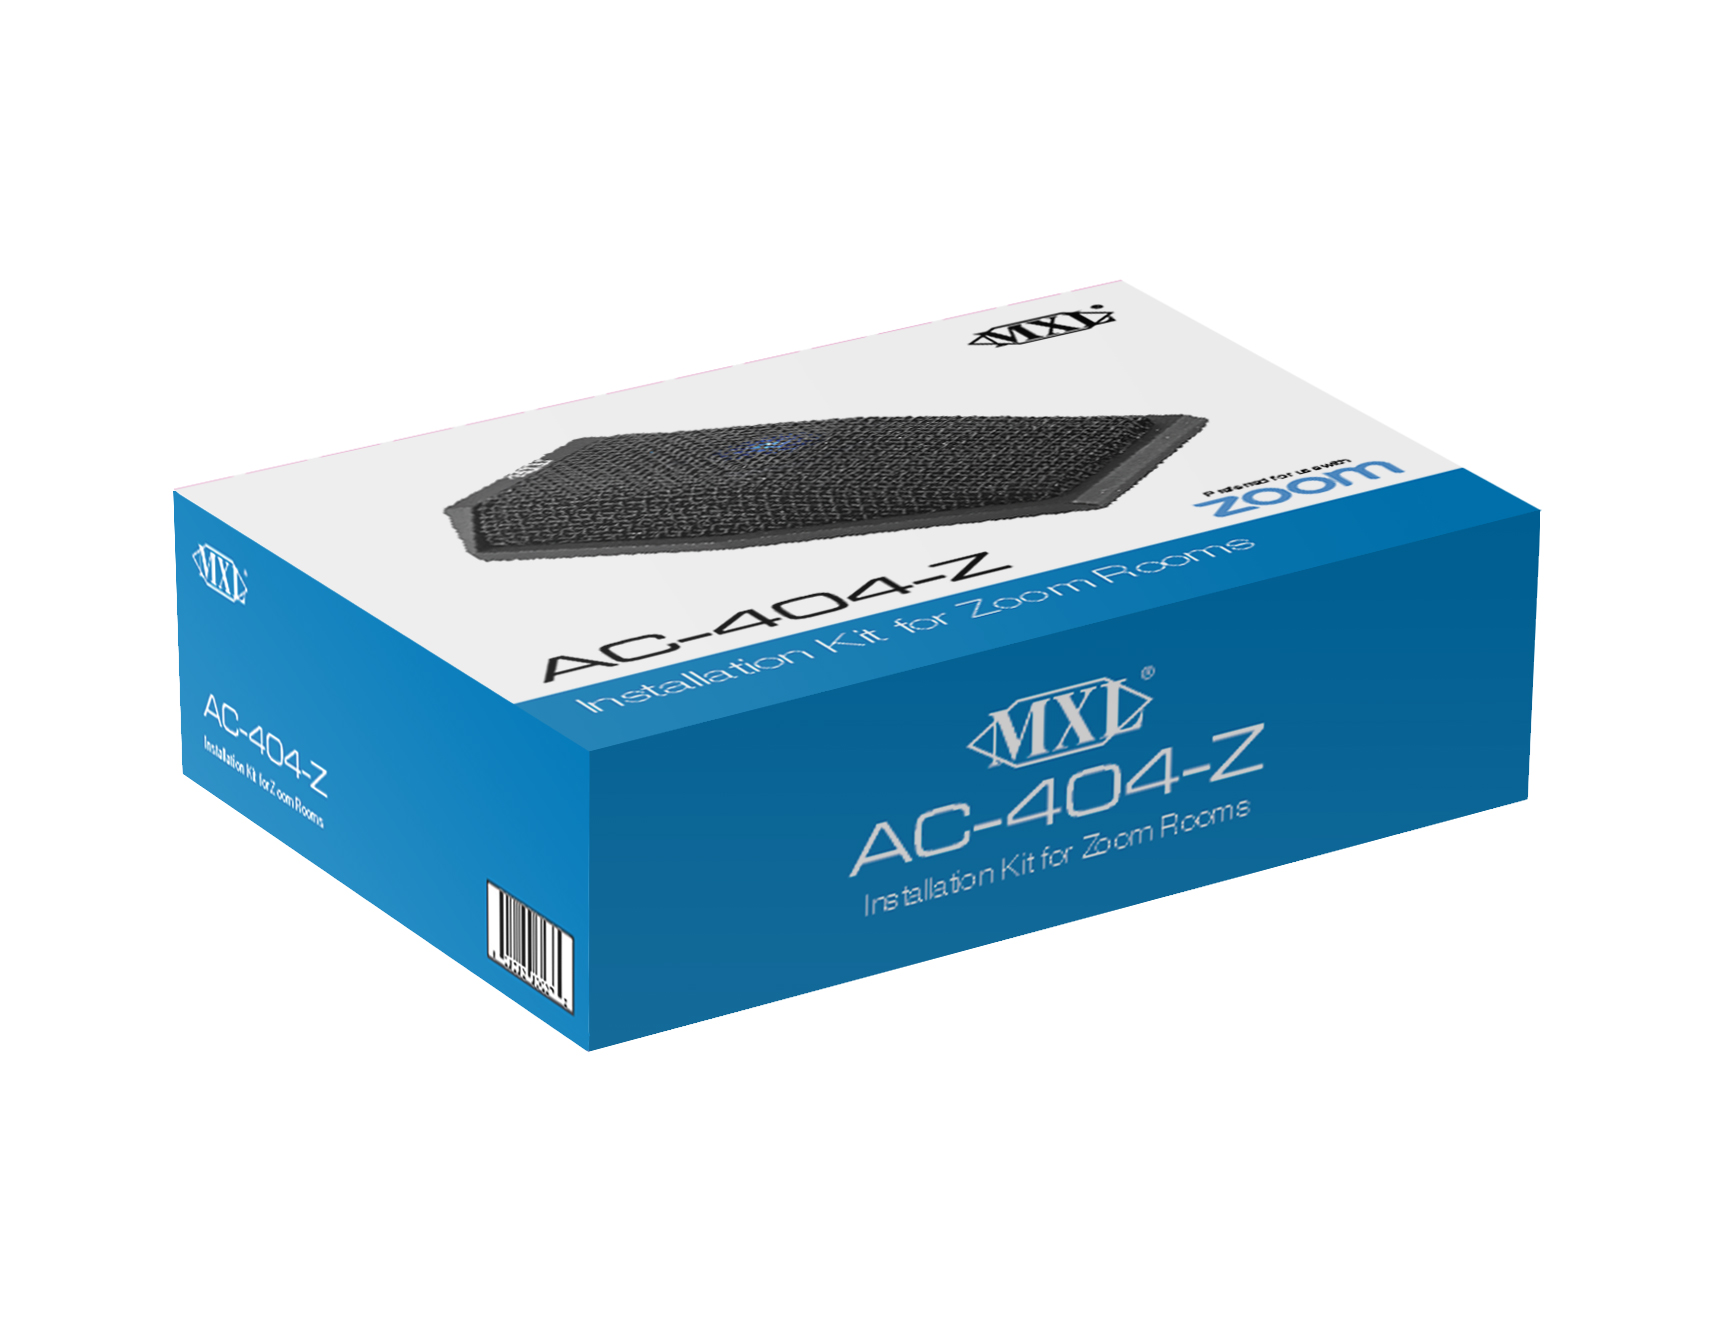 AC-404 Z Zoom Microphone Box